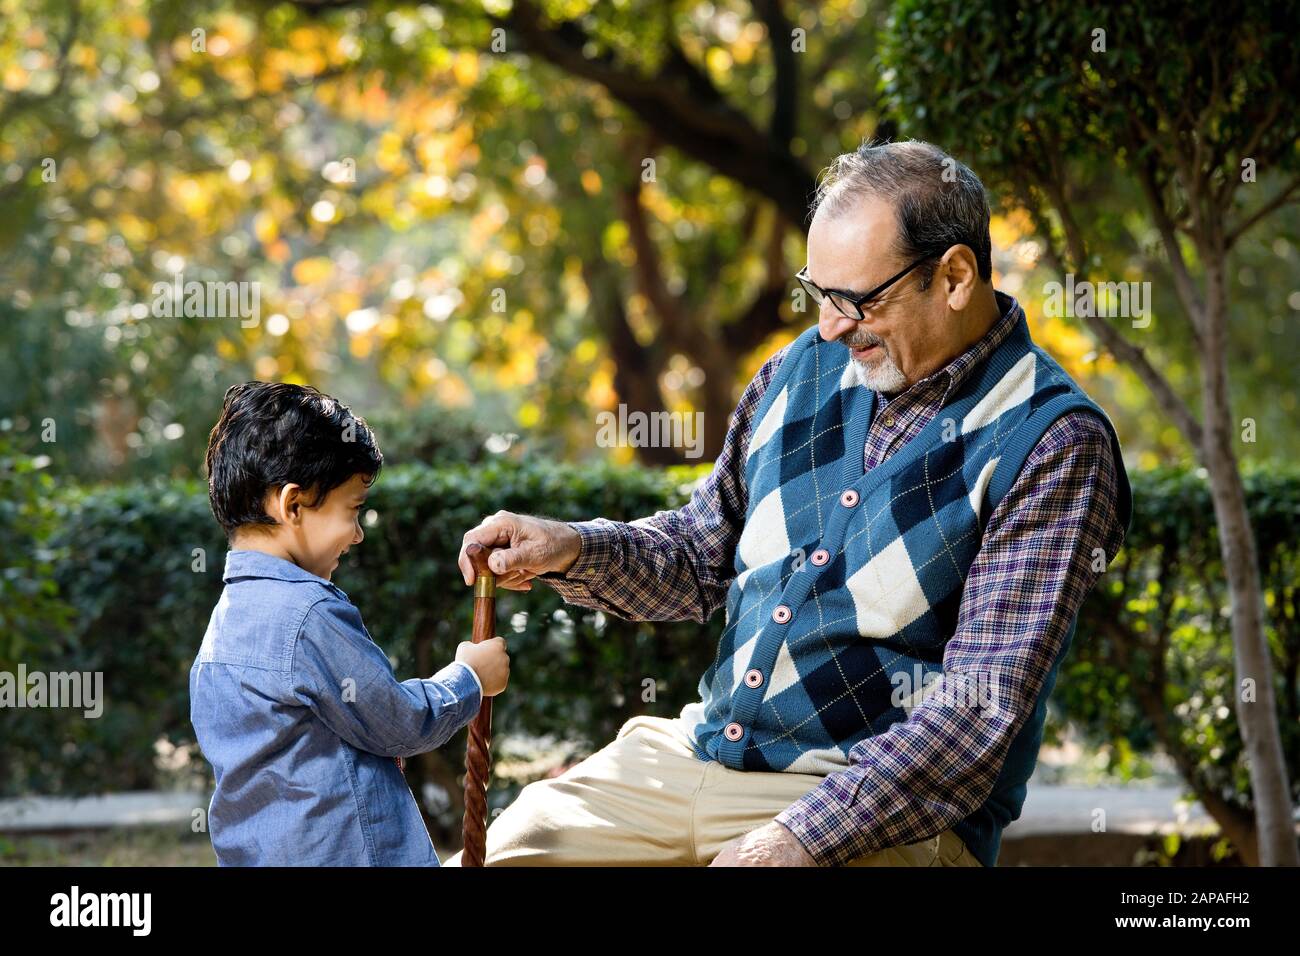 Grand-père affectueux jouant avec son petit-fils au parc Banque D'Images